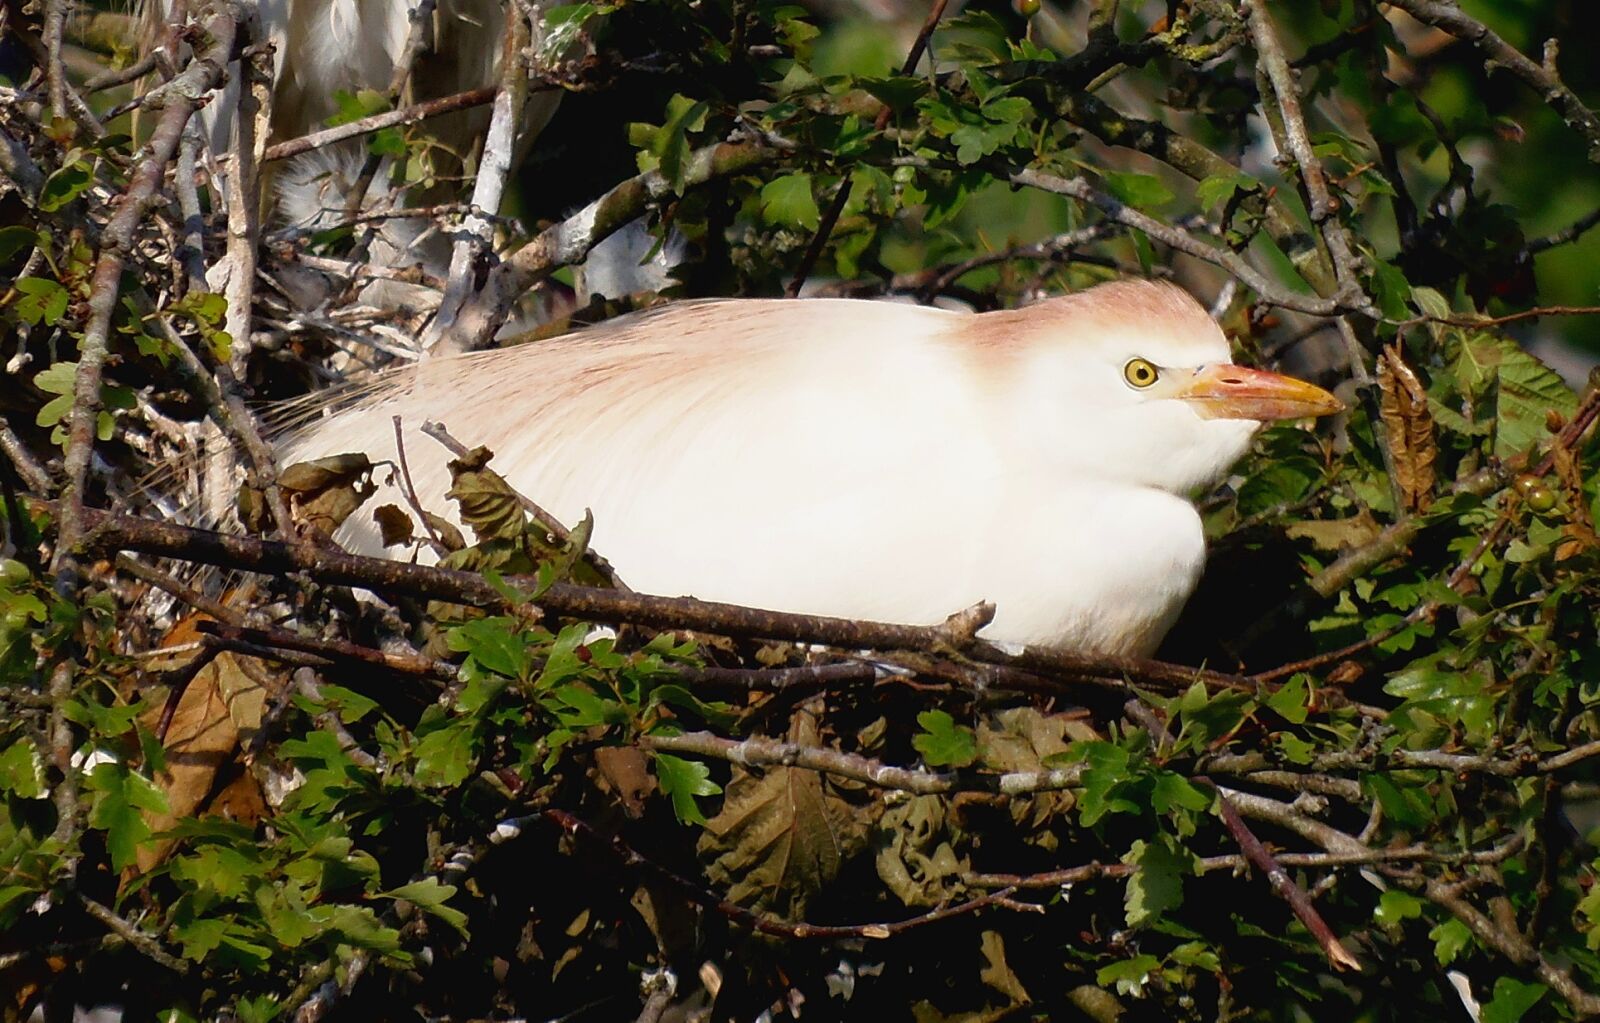 Olympus SP-810UZ sample photo. Cattle egret, ave, animal photography